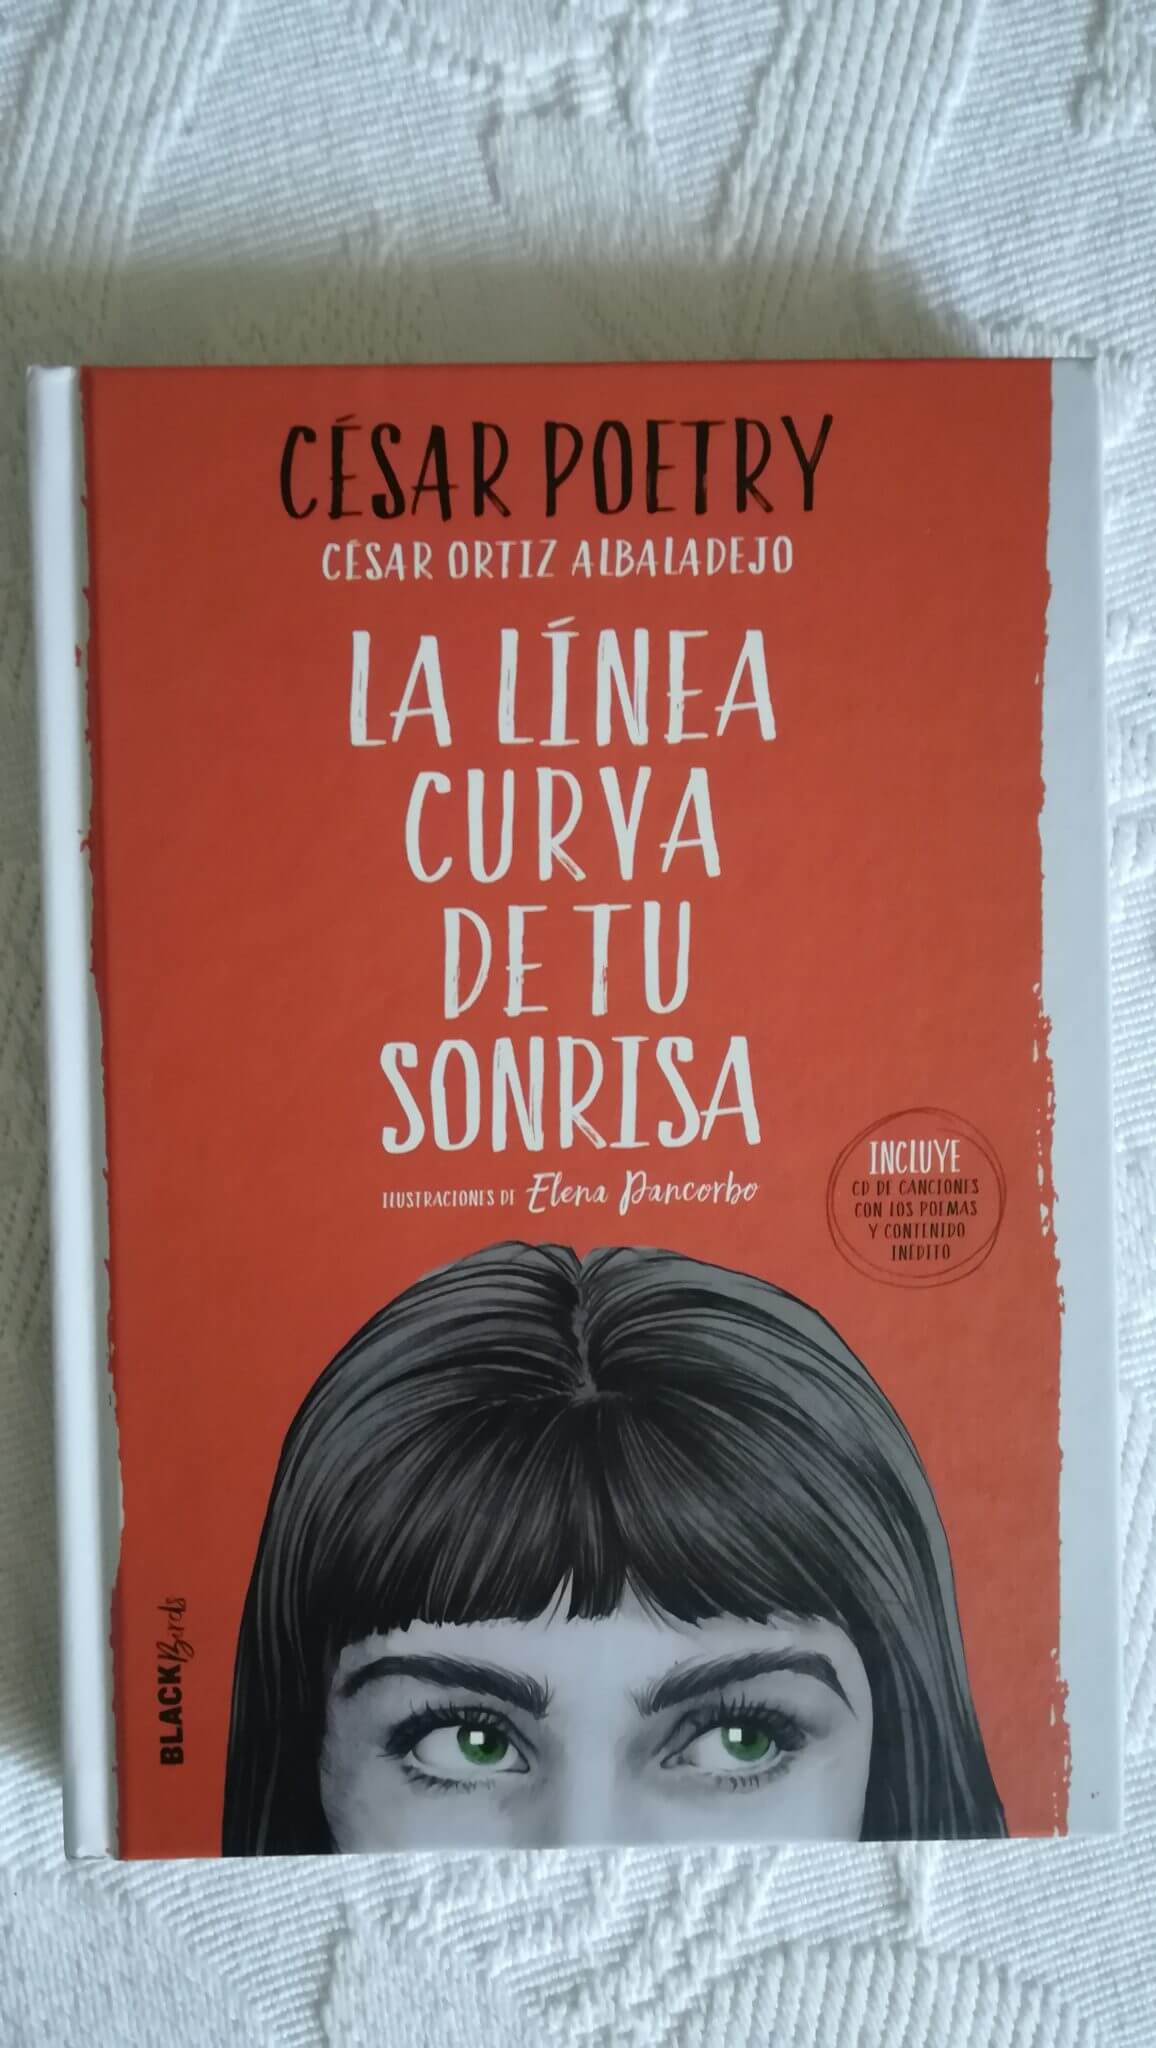 La línea curva de tu sonrisa – César Poetry